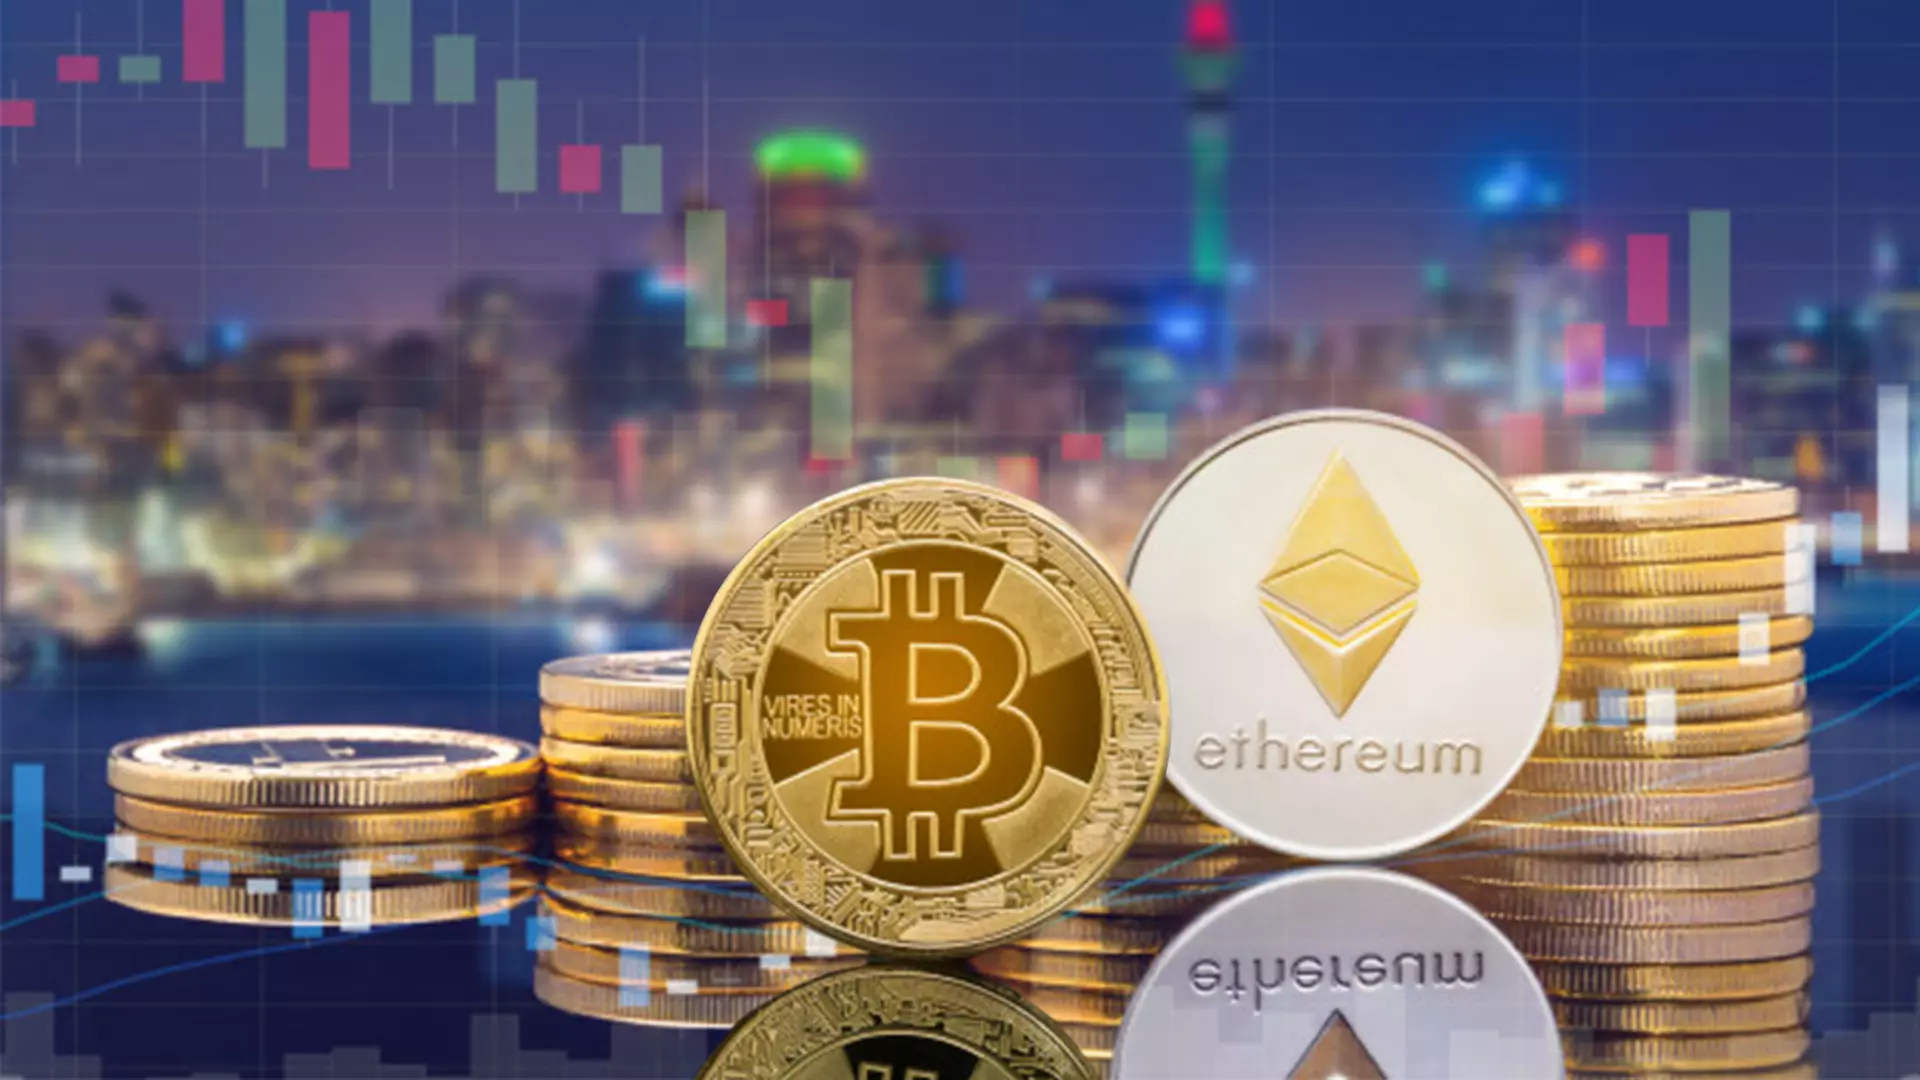 poros prekybos bitcoin ethereum ar naudinga investuoti į bitcoin grynuosius pinigus